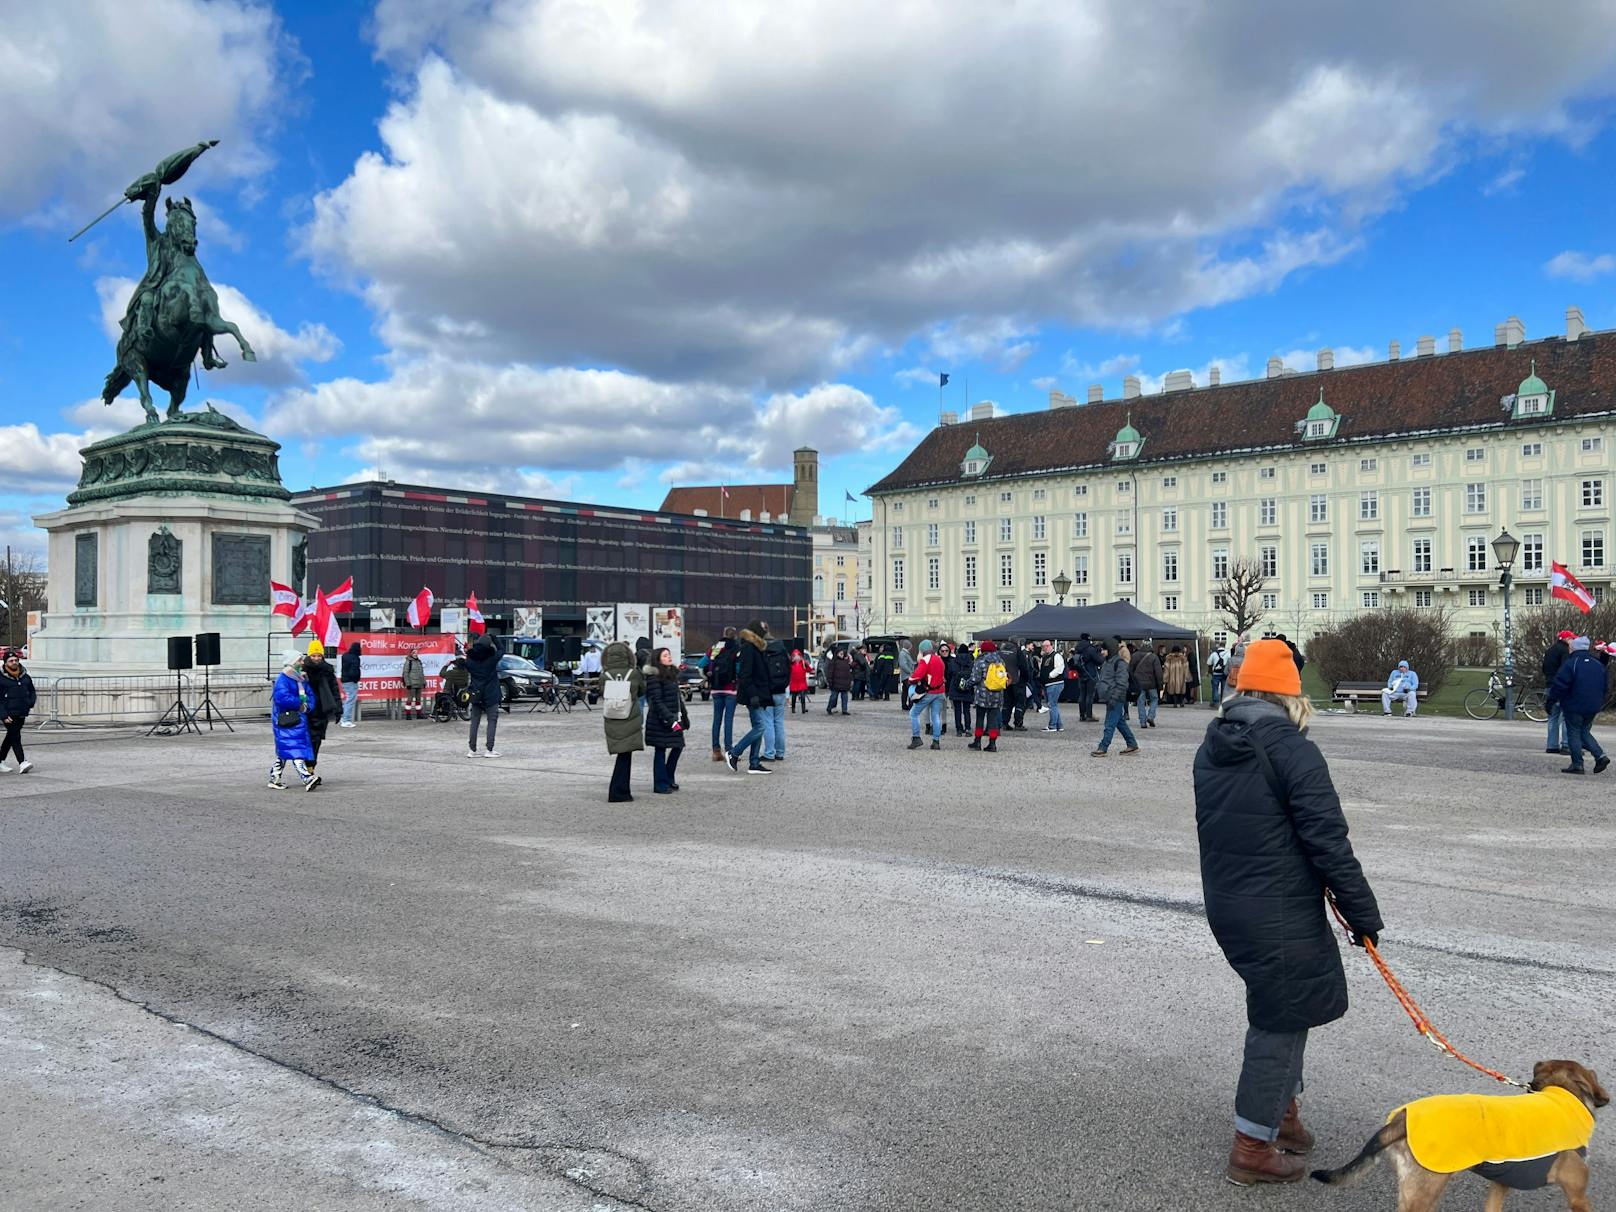 Die Großdemonstration "Megademo – Für direkte Demokratie" am Sonntag (05.02.23) wurde zum Flop für die Veranstalter. Nur wenige Hundert nahmen in Wien teil.